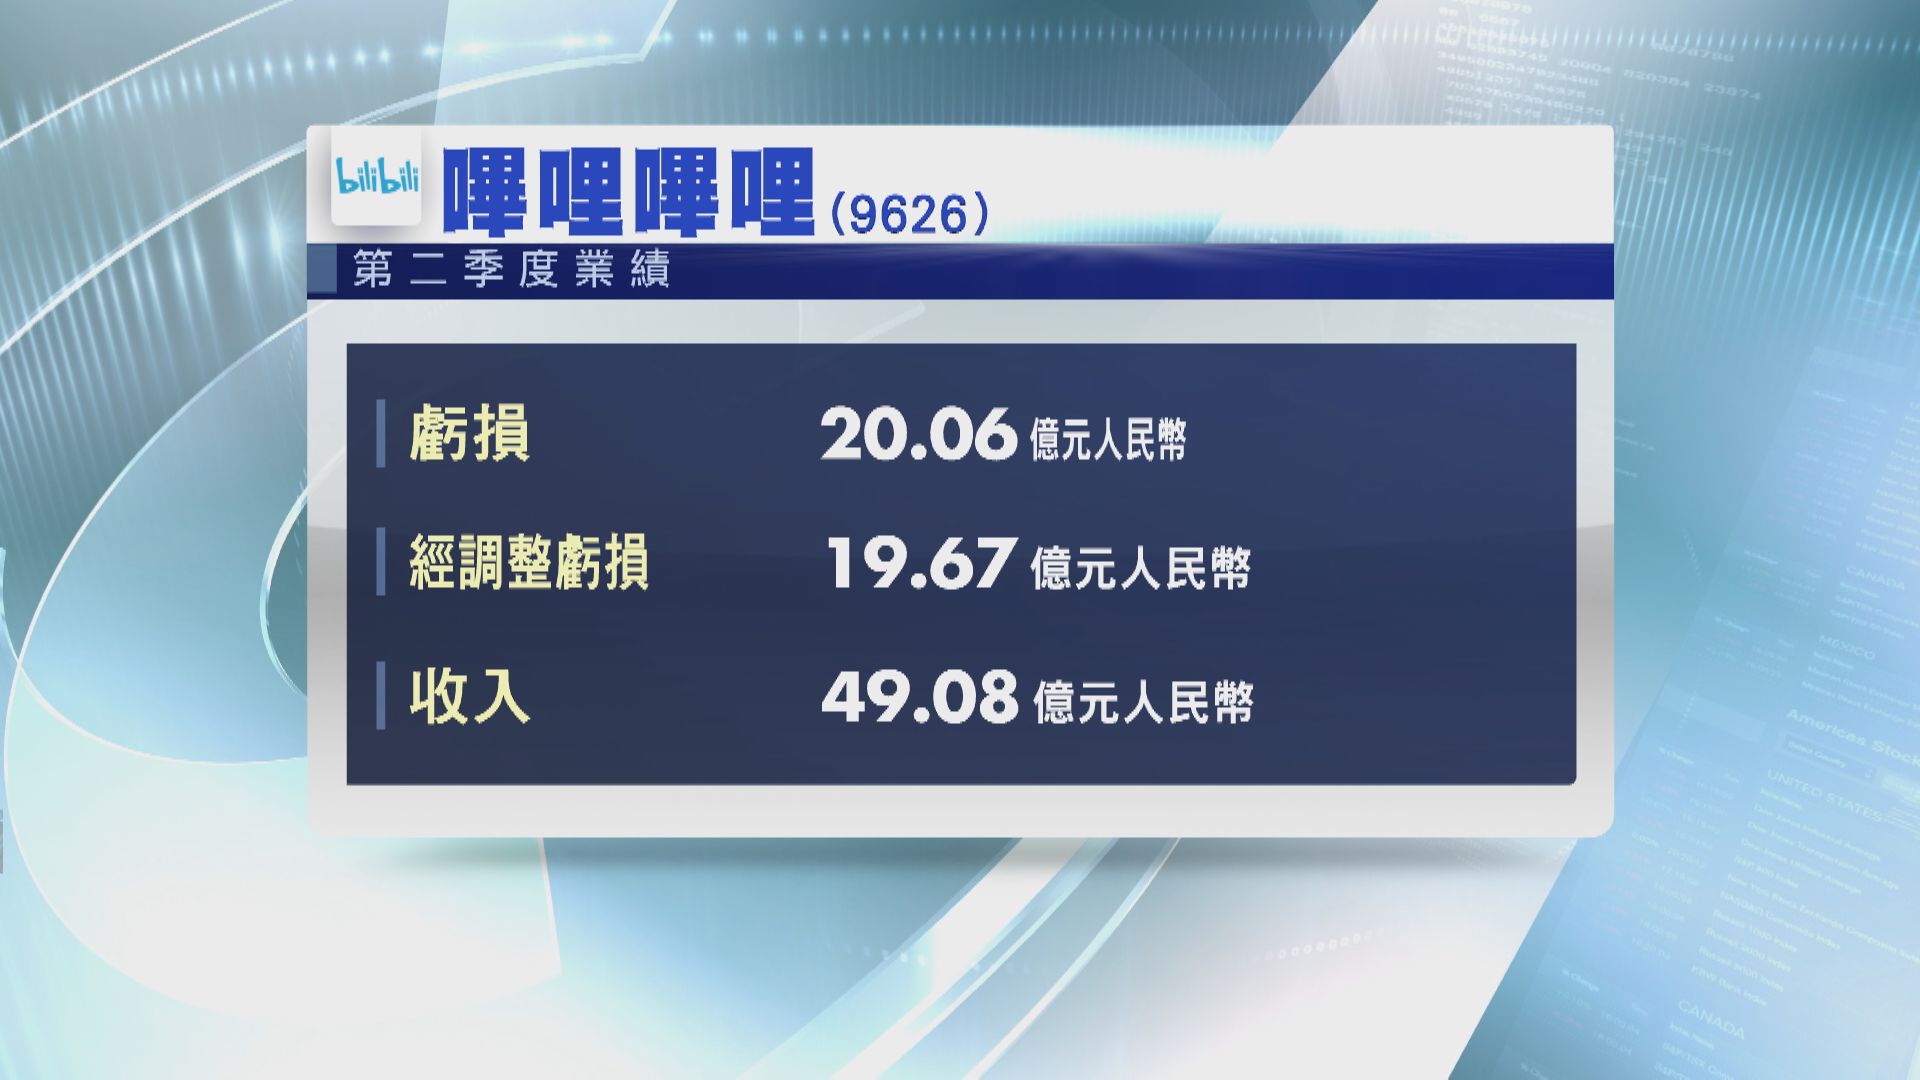 【業績速報】B站第2季經調整虧損擴至19.6億人幣